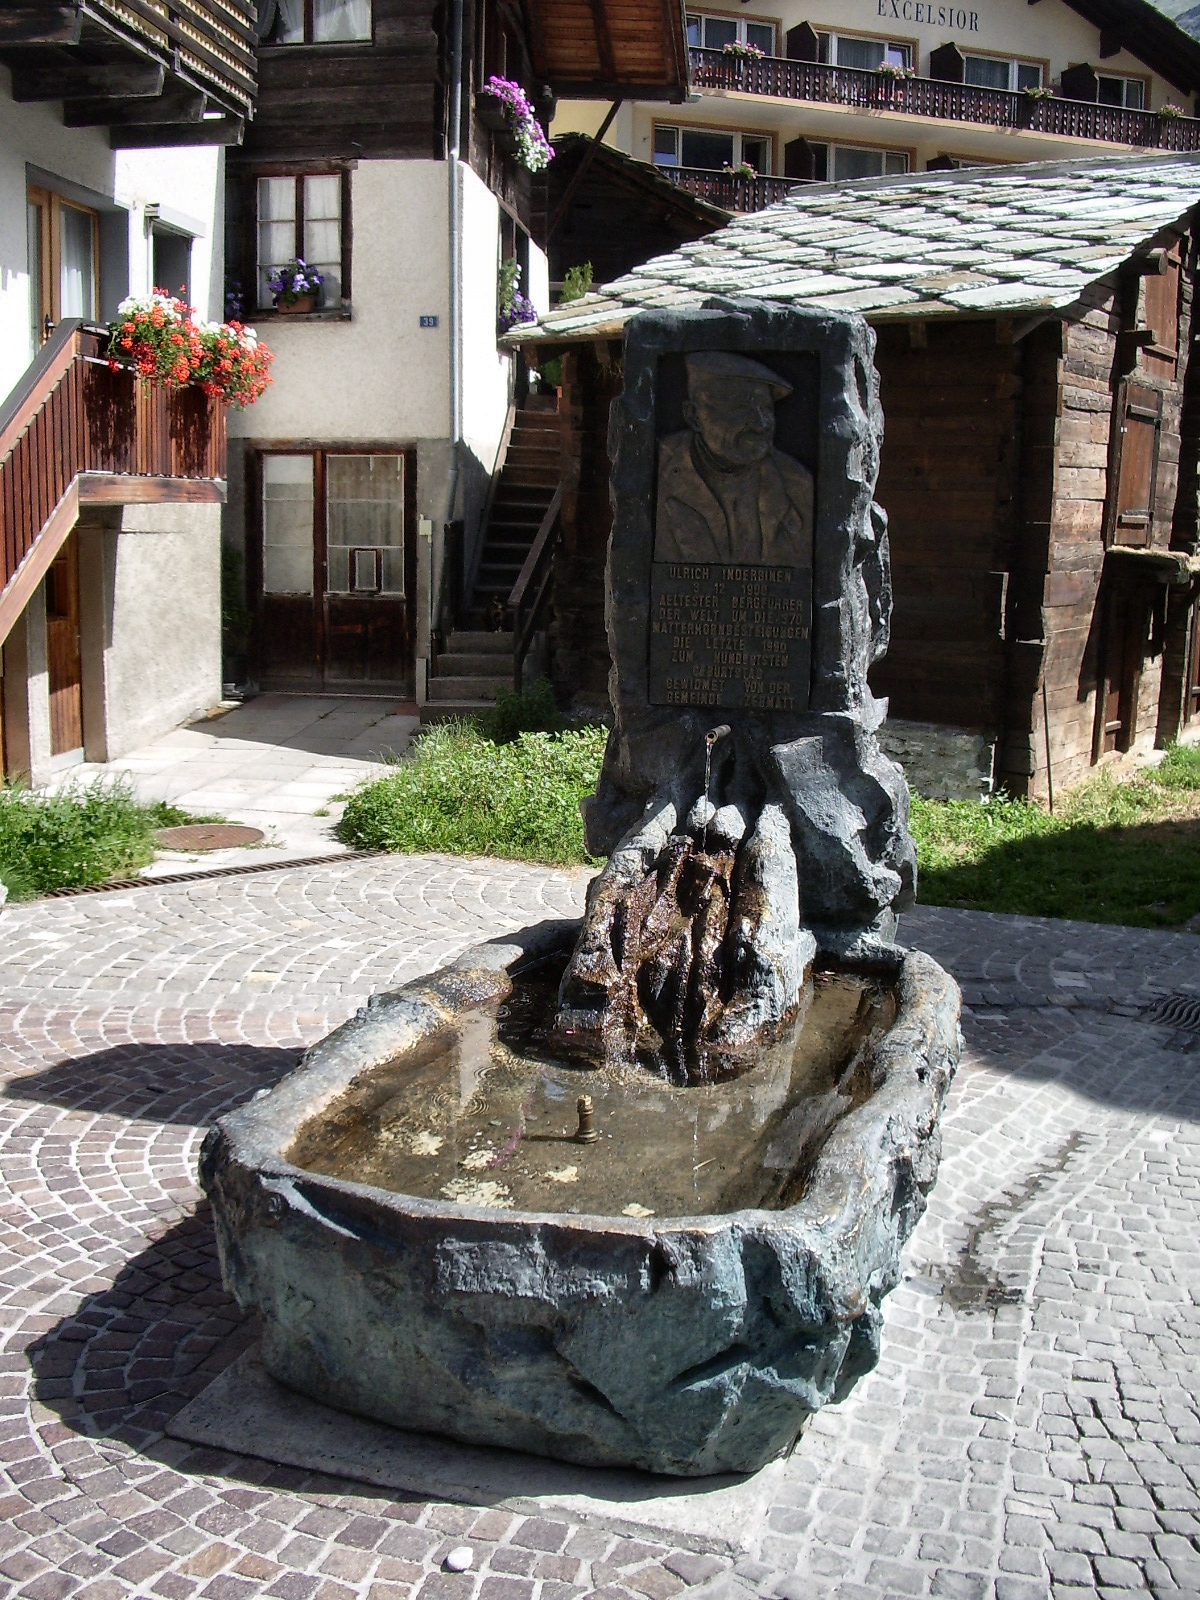 памятный знак, установленный в Церматте в честь Ульриха Индербинена (Ulrich Inderbinen), великого человека Швейцарских Альп